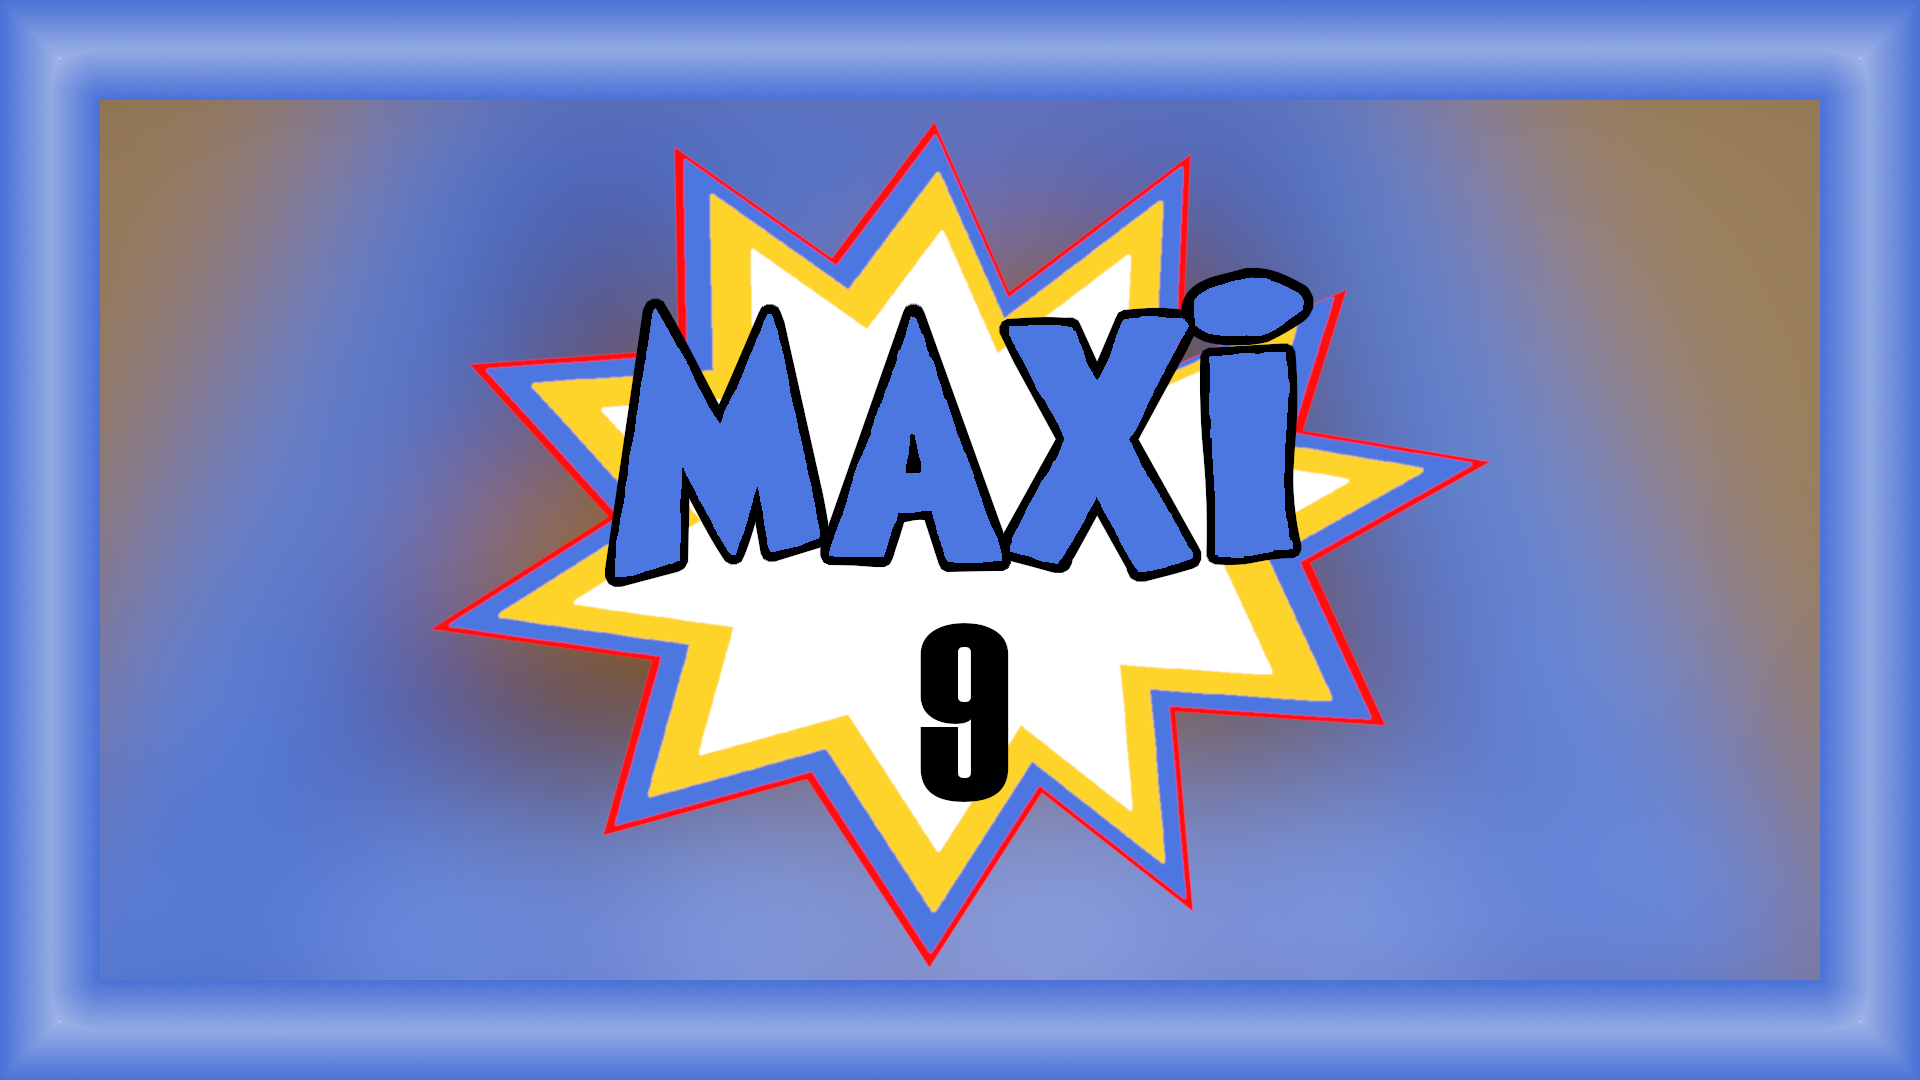 Maxi 9